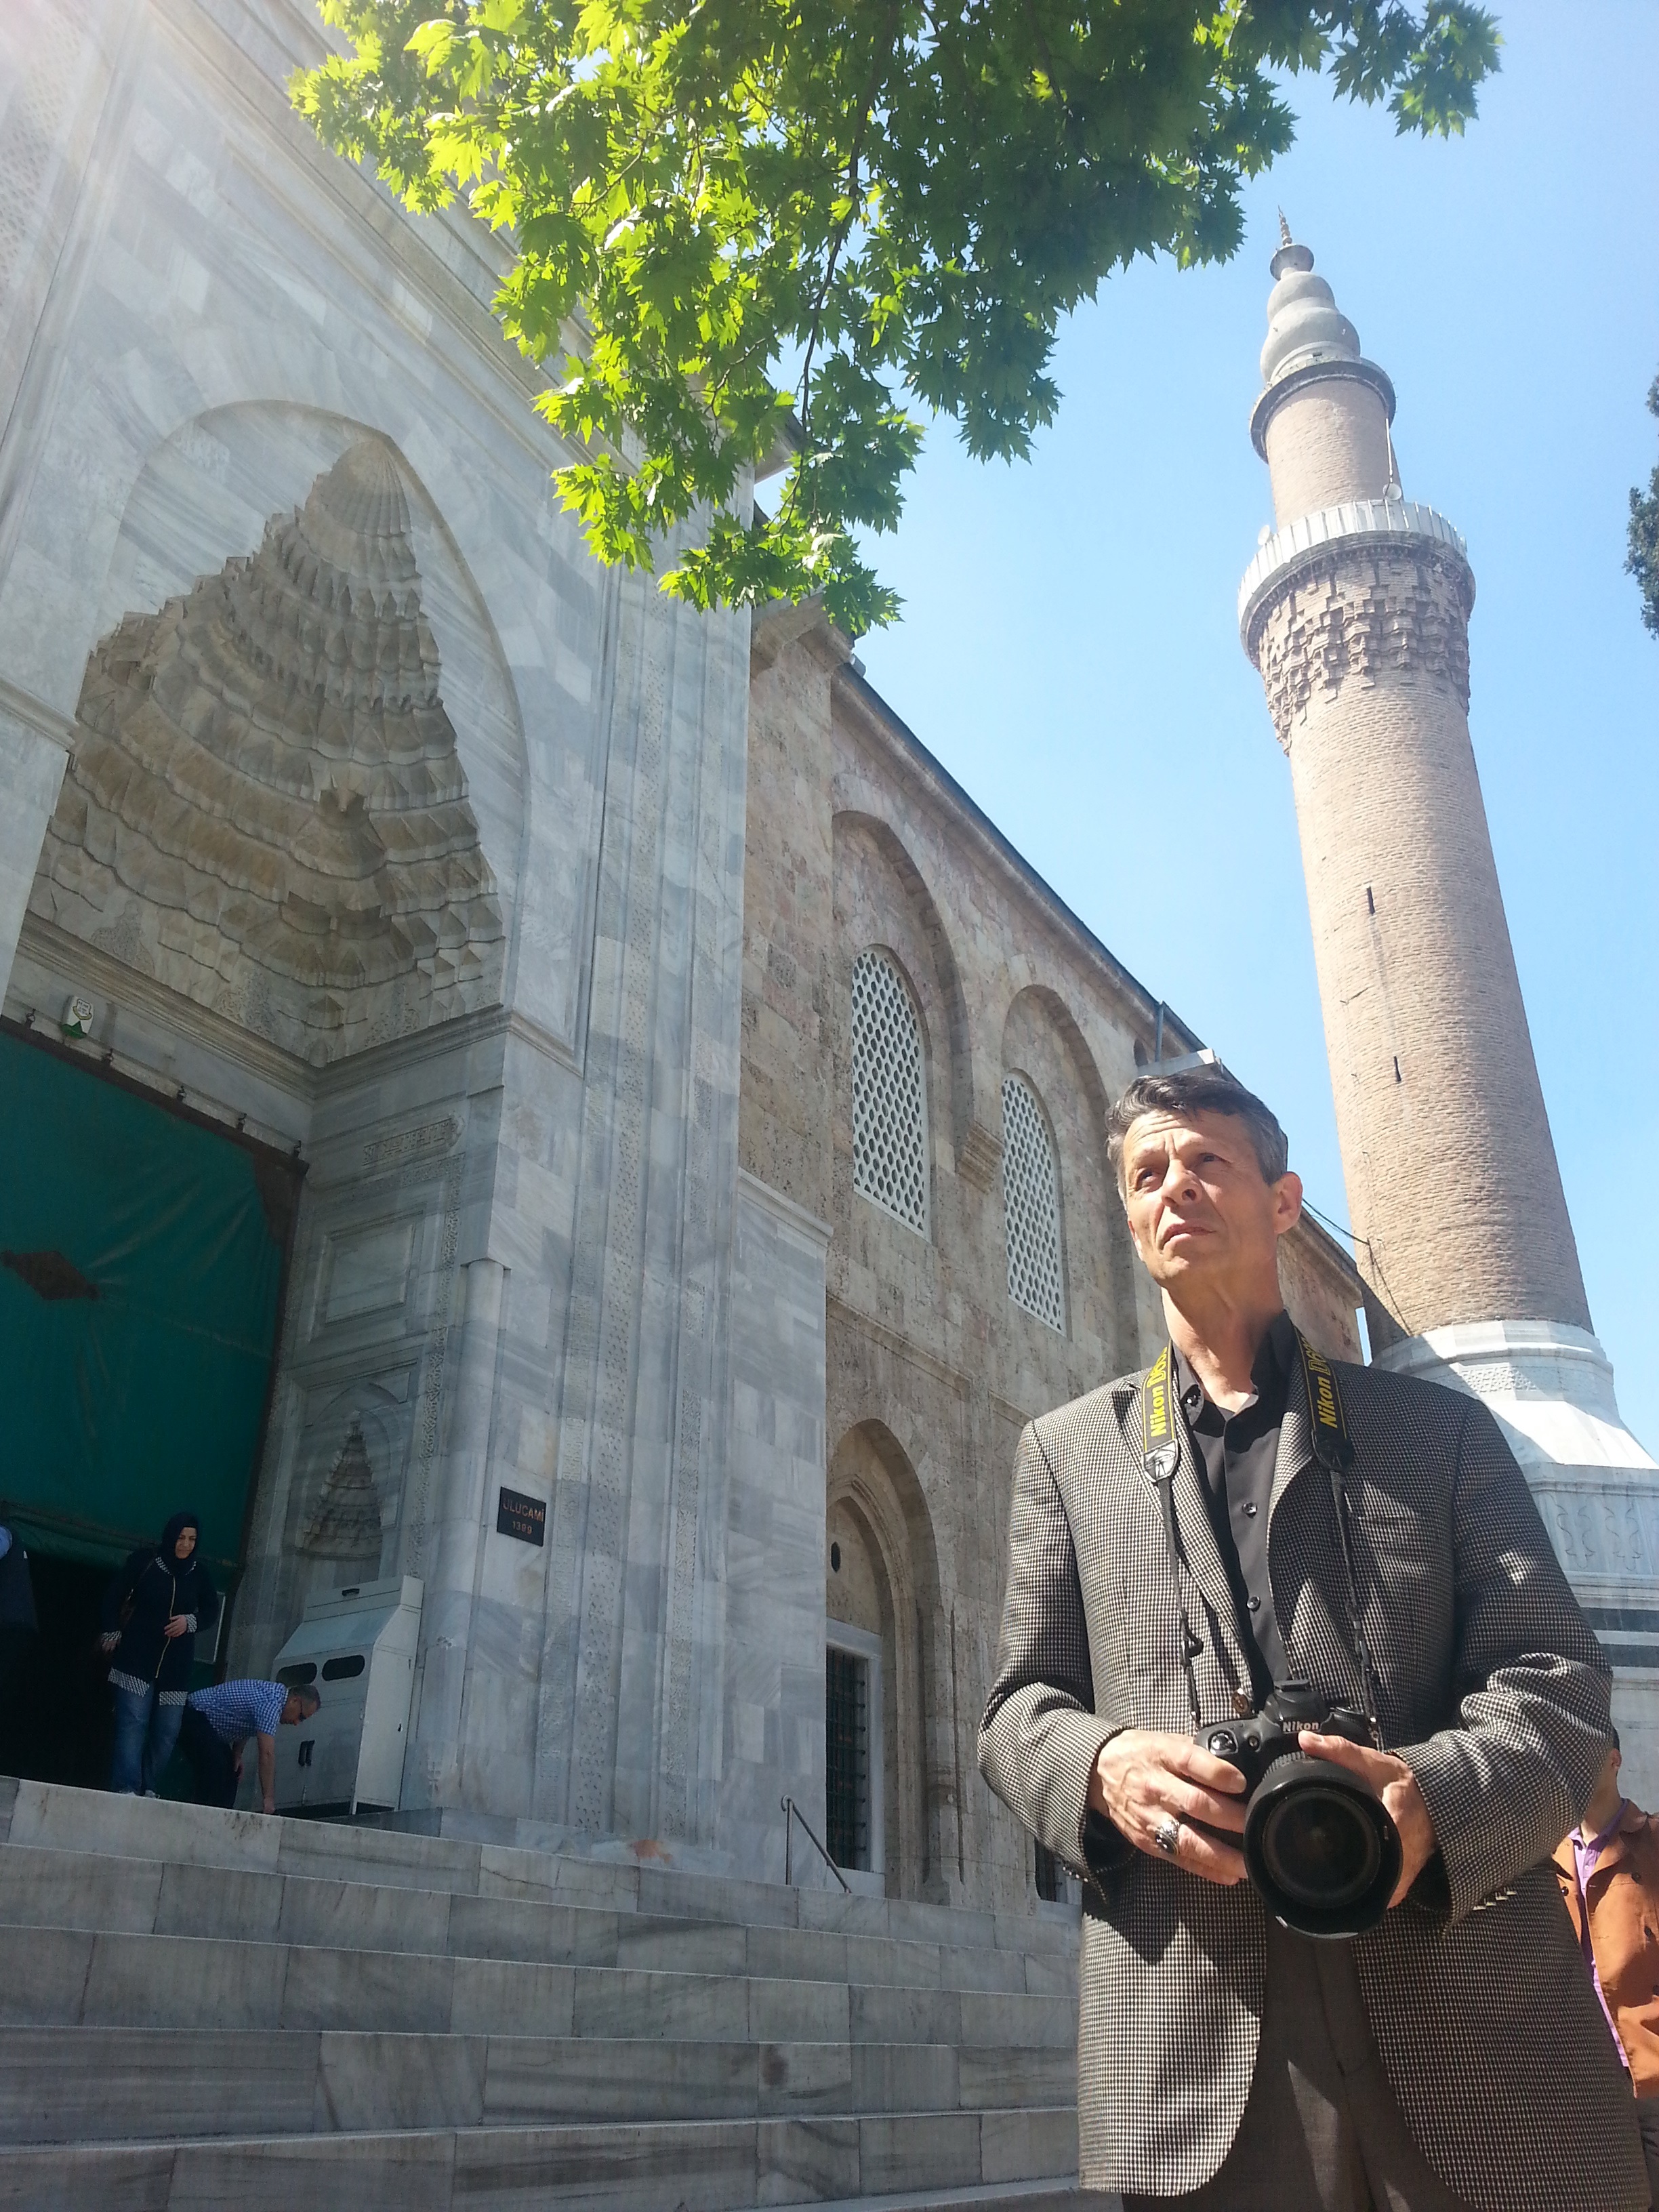 كان مصطفى جمباظ هو الفنان الوحيد الذي صور كلّ المساجد الجامعة الموجودة في تركيا بحسب رئاسة مركز ثقافة أتاتورك برئاسة الوزراء.